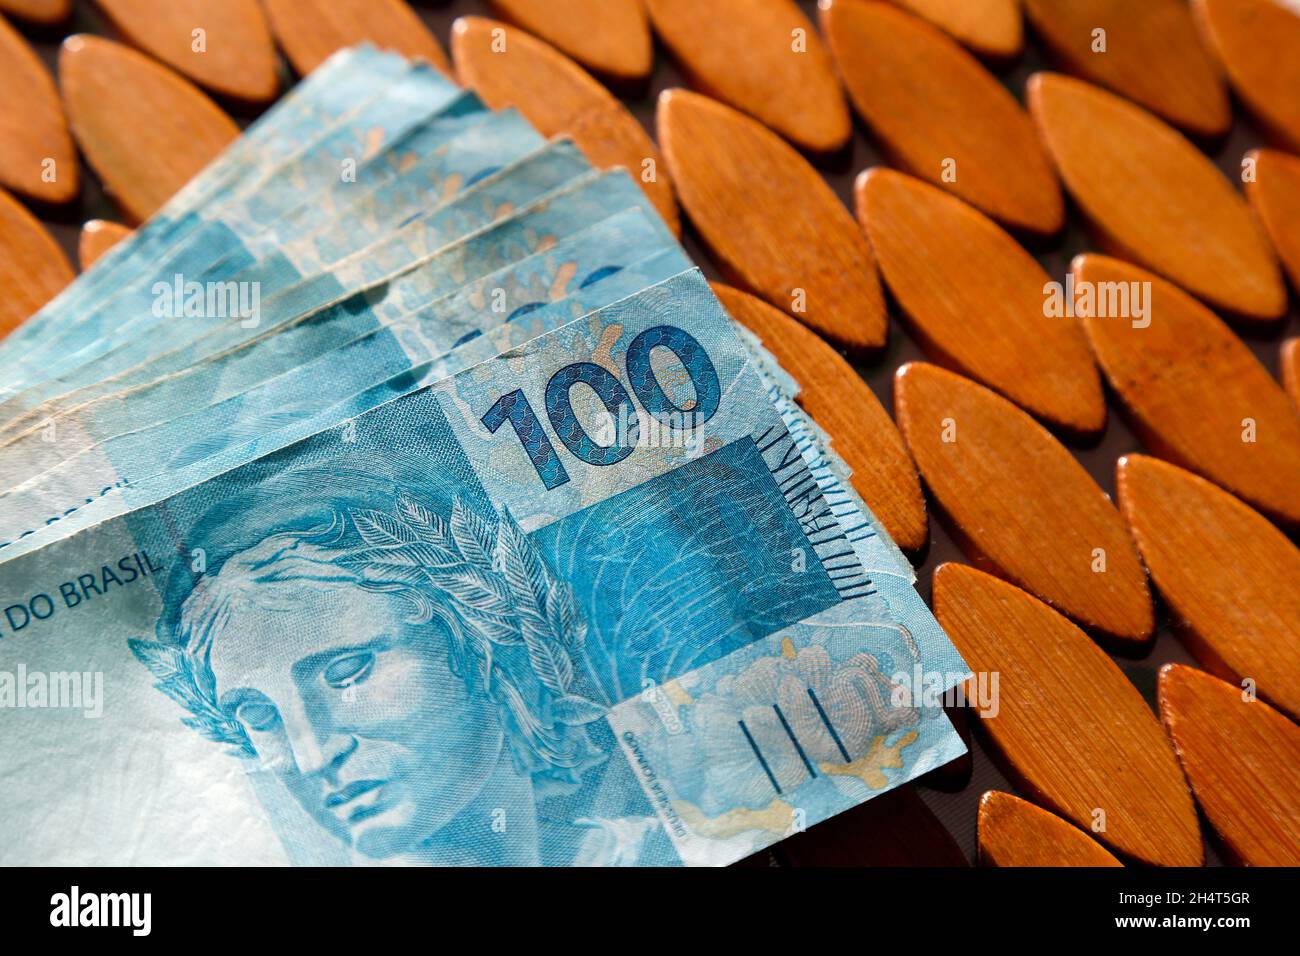 argent du brésil empilé sur une surface mate et dirigé lumière - plusieurs centaines de factures réelles Banque D'Images